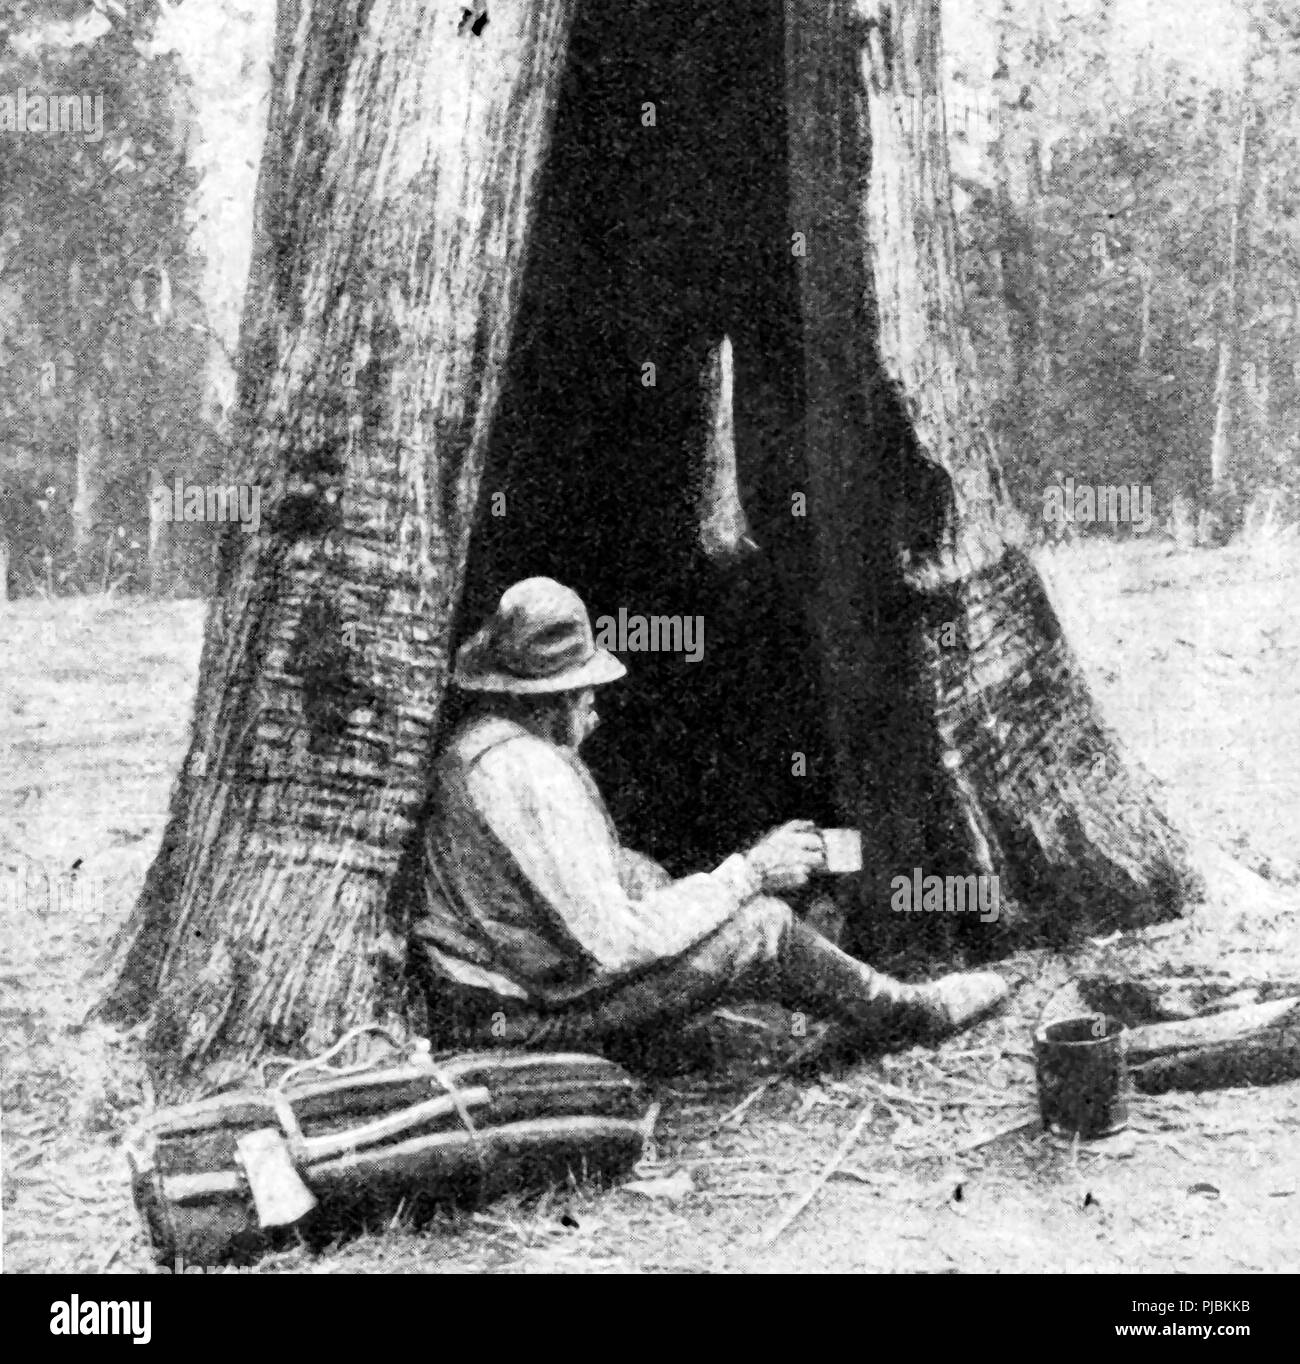 1920 Una imagen de un colono de Australia (swag-hombre o minero de oro ) que vive en una choza rudimentaria hecha de un tronco de árbol hueco Foto de stock